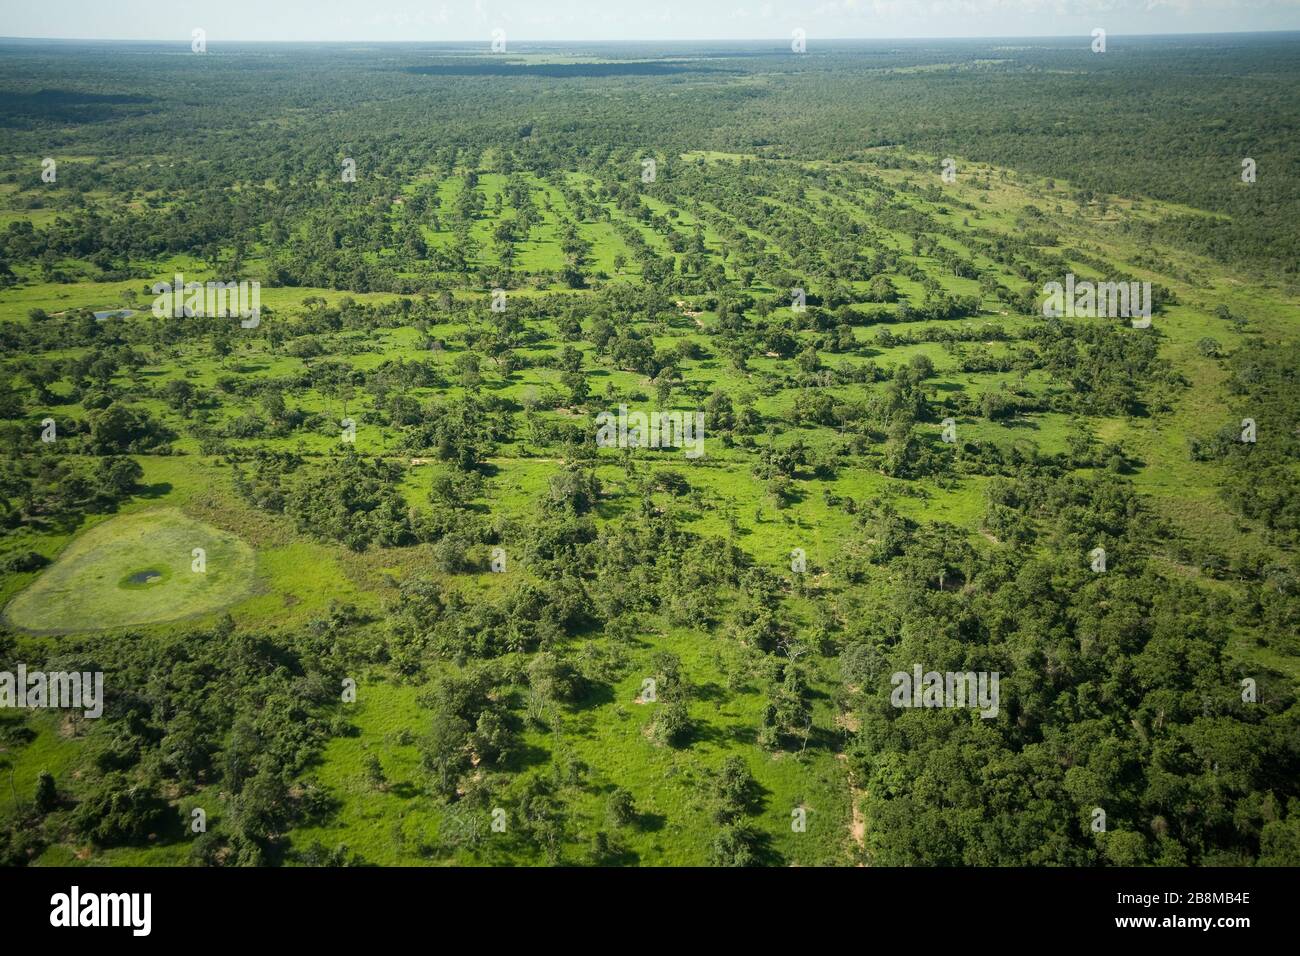 área de pecuária com pastagem e árvores, áreas de bosque separadas con relieve poco bajado con campo, Aquidauana, Mato Grosso do Sul, Brasil Foto de stock